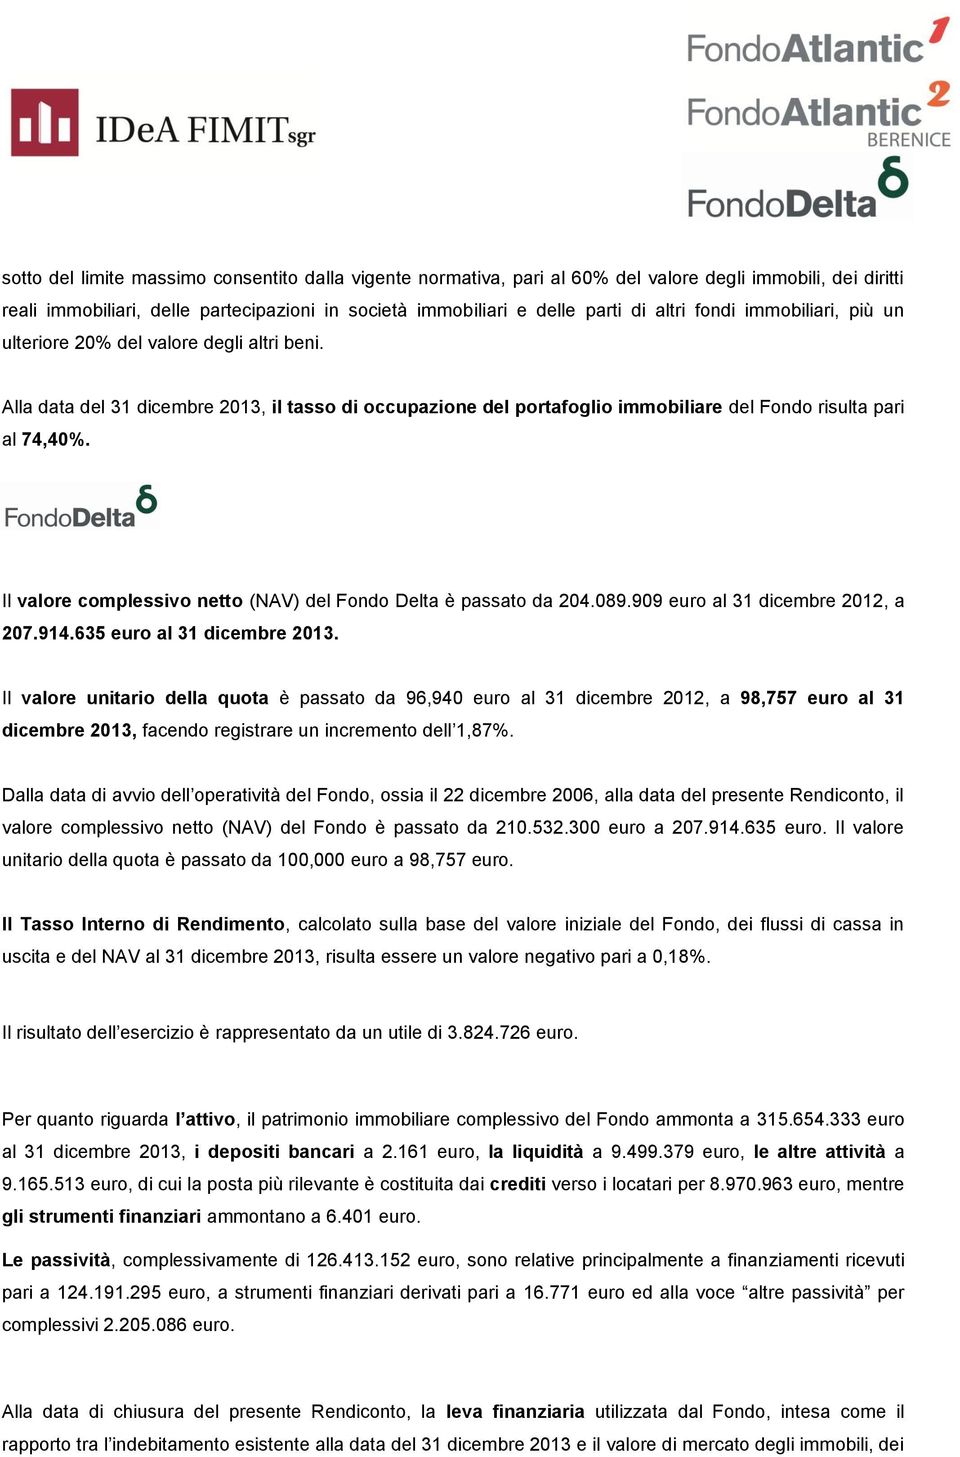 Il valore complessivo netto (NAV) del Fondo Delta è passato da 204.089.909 euro al 31 dicembre 2012, a 207.914.635 euro al 31 dicembre 2013.